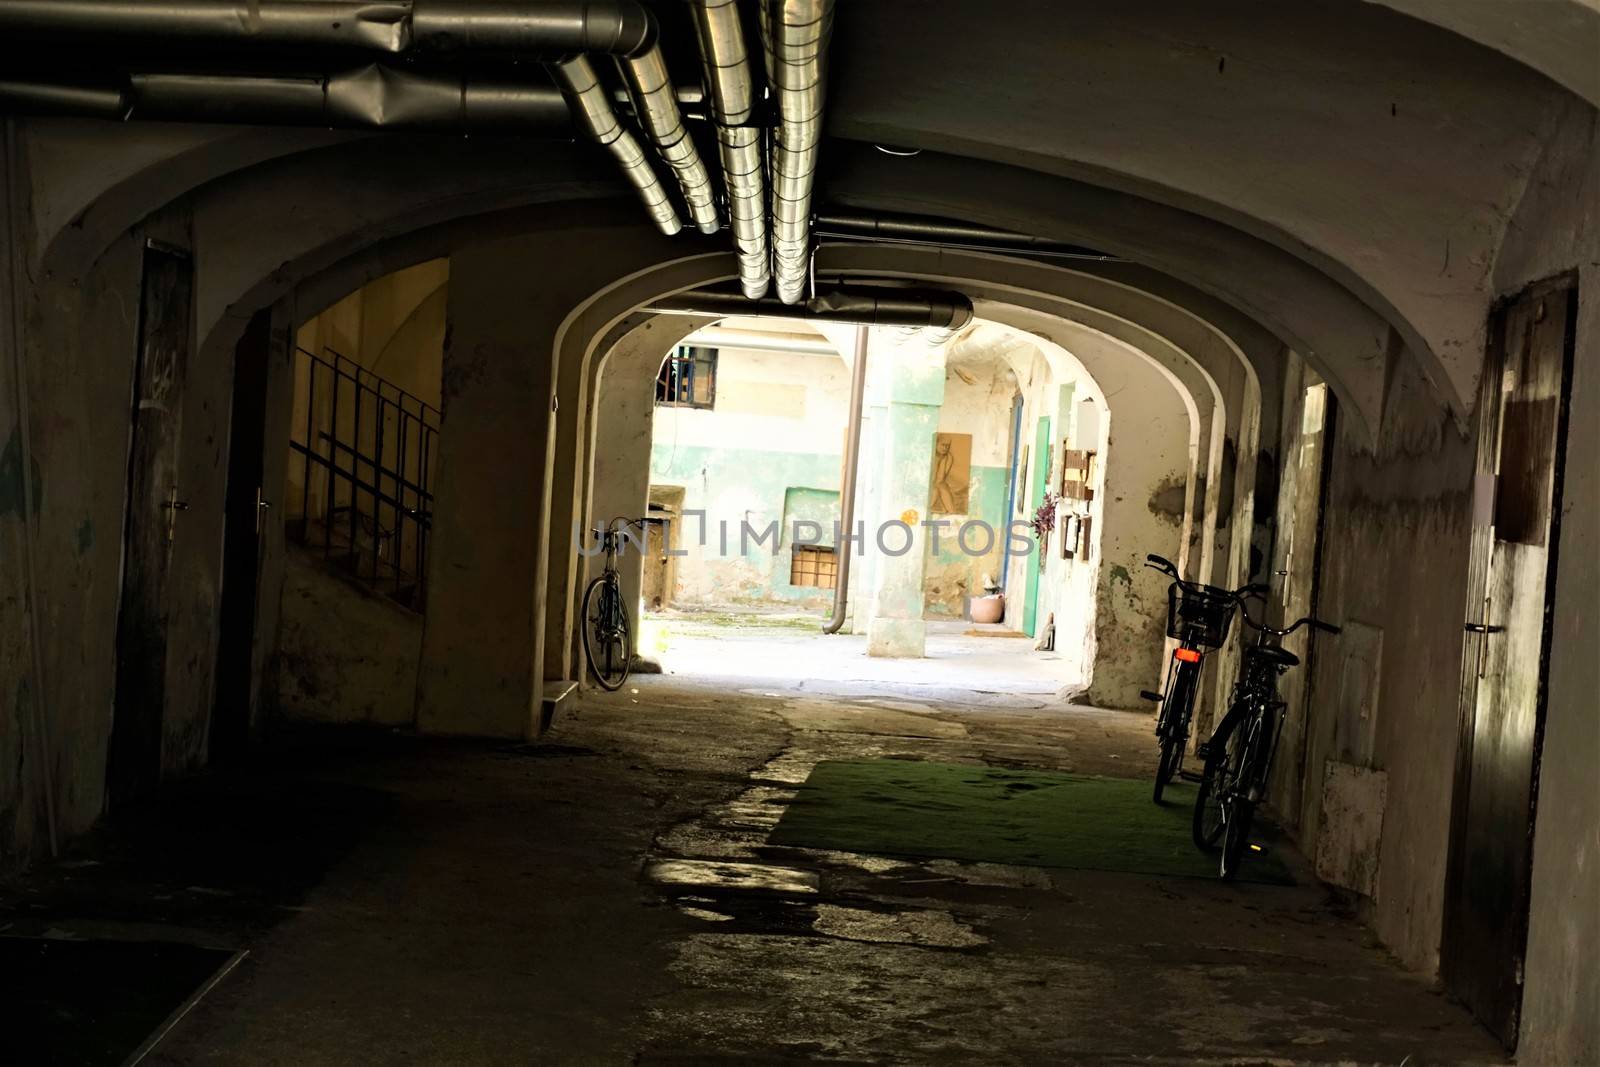 Dark passage with bicycles in Ljubljana, Slovenia